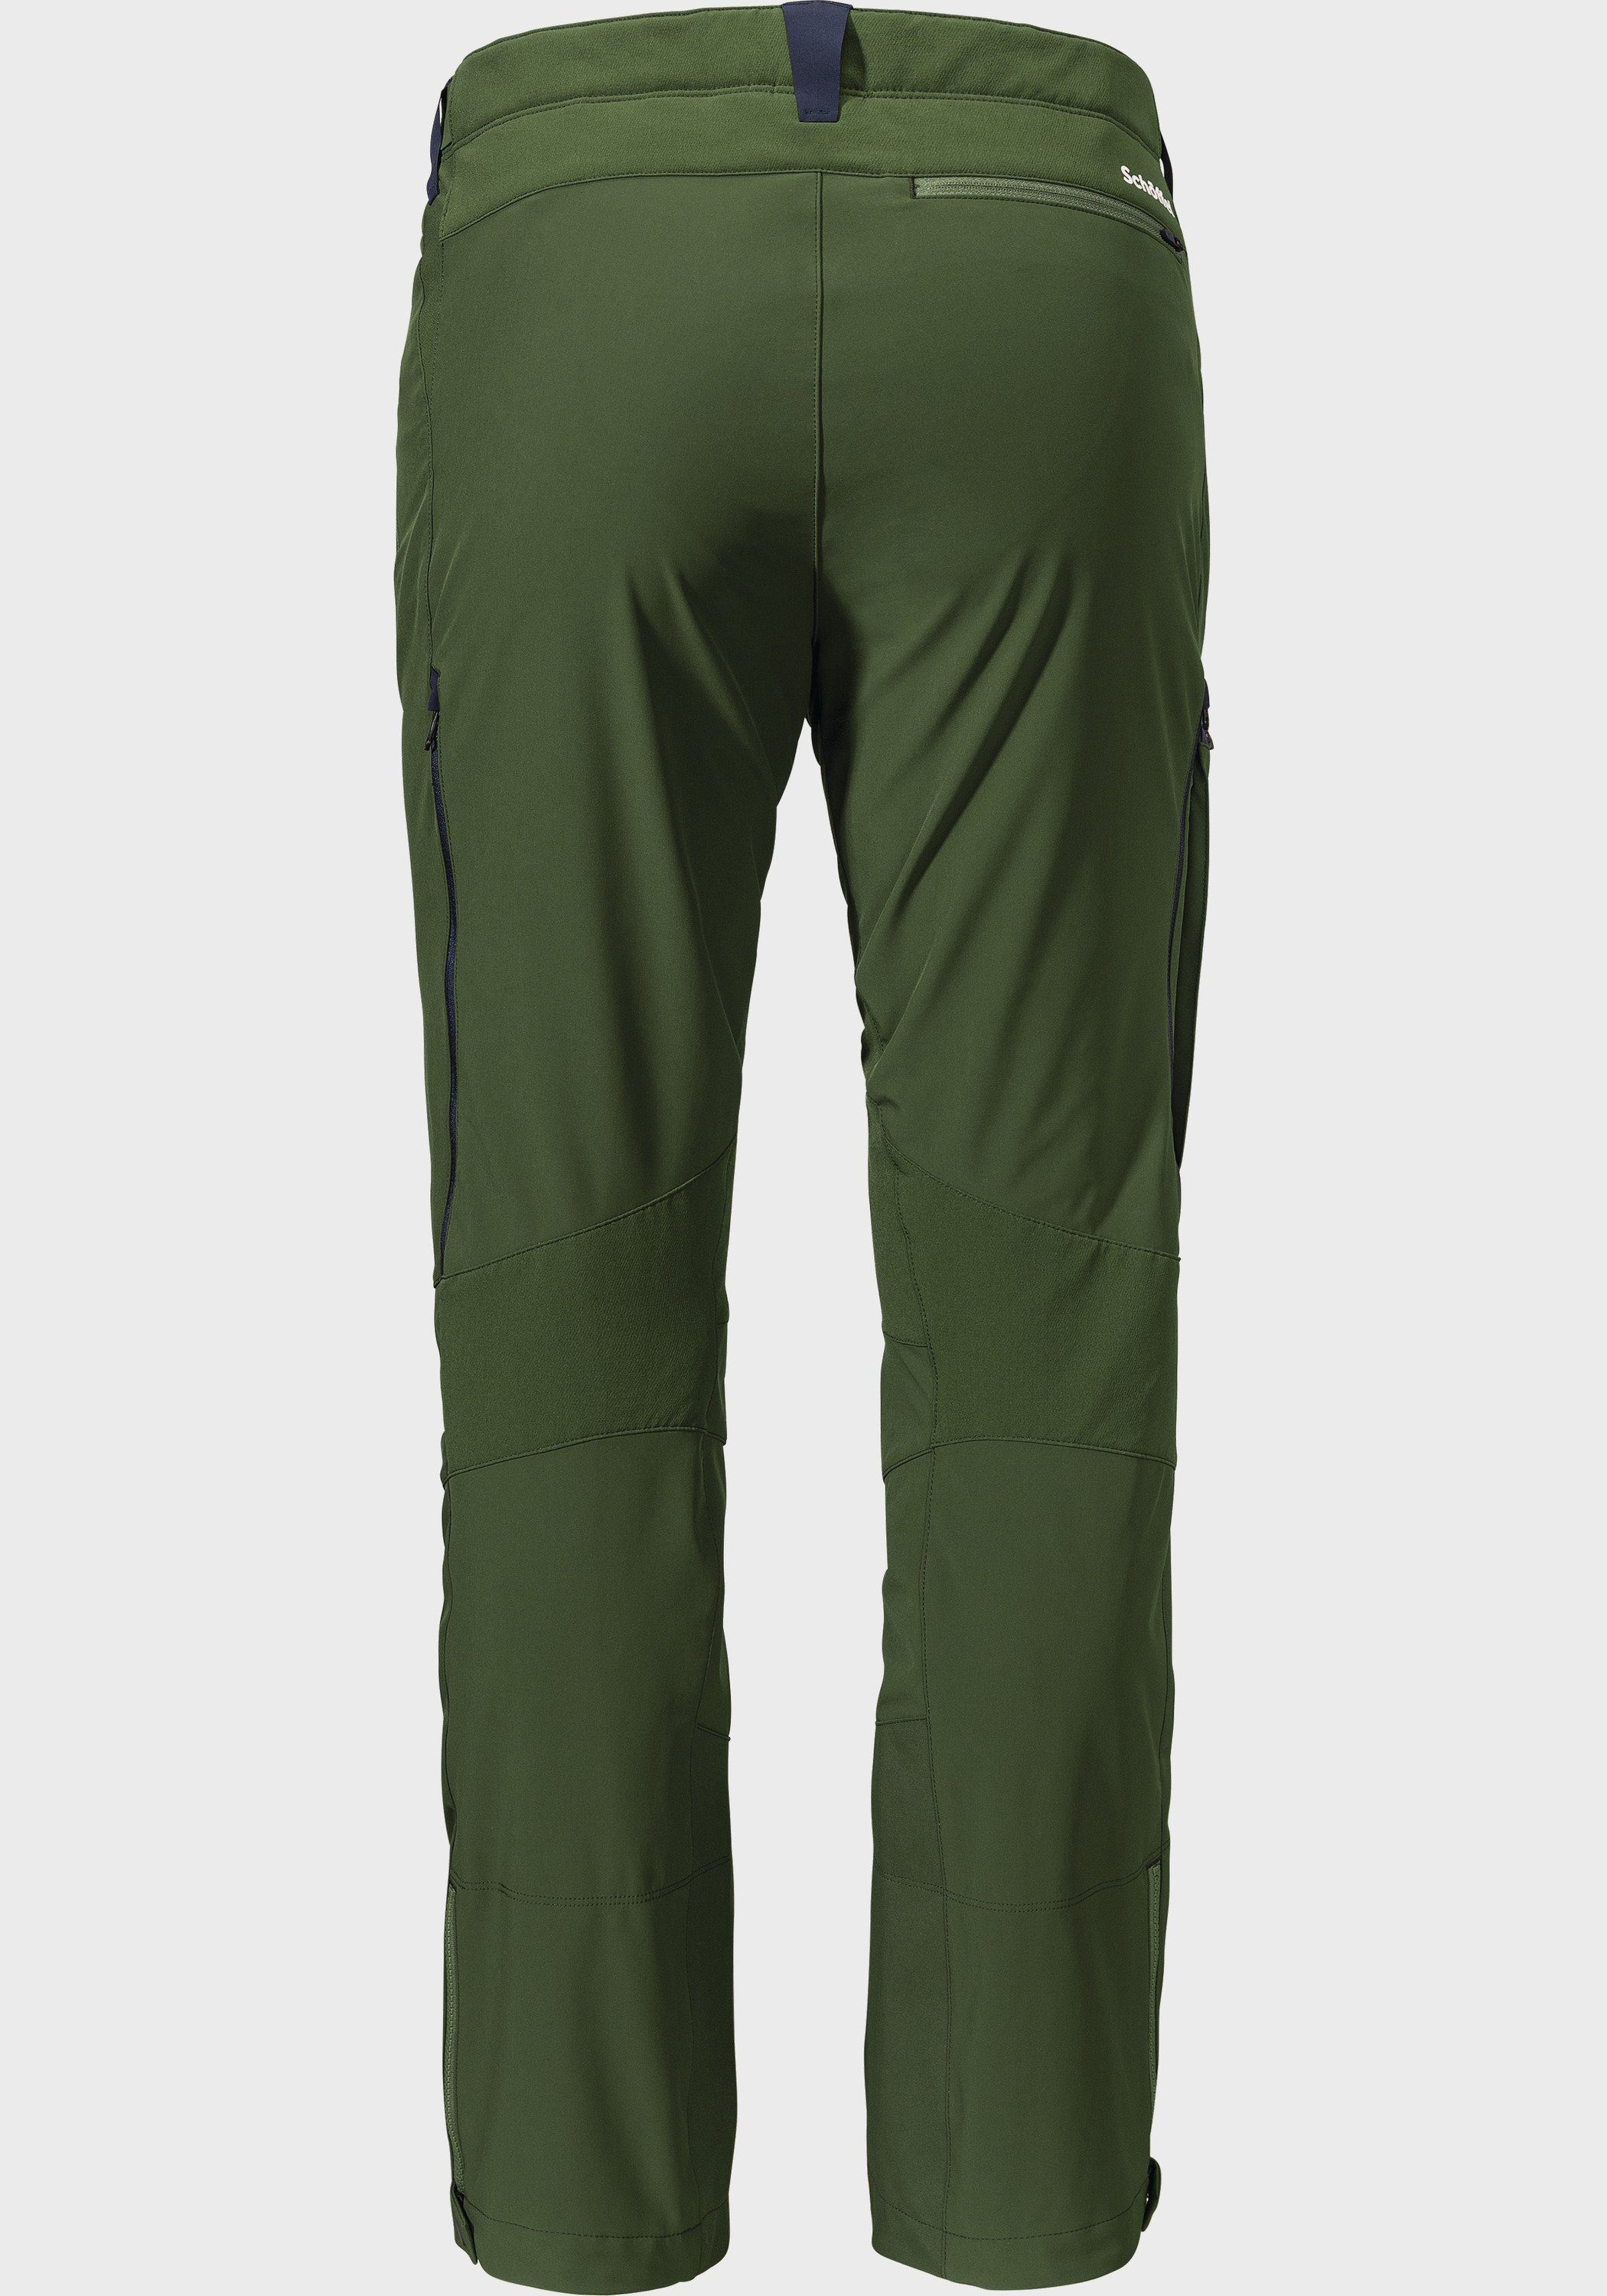 Schöffel Outdoorhose M grün Softshell Matrei Pants